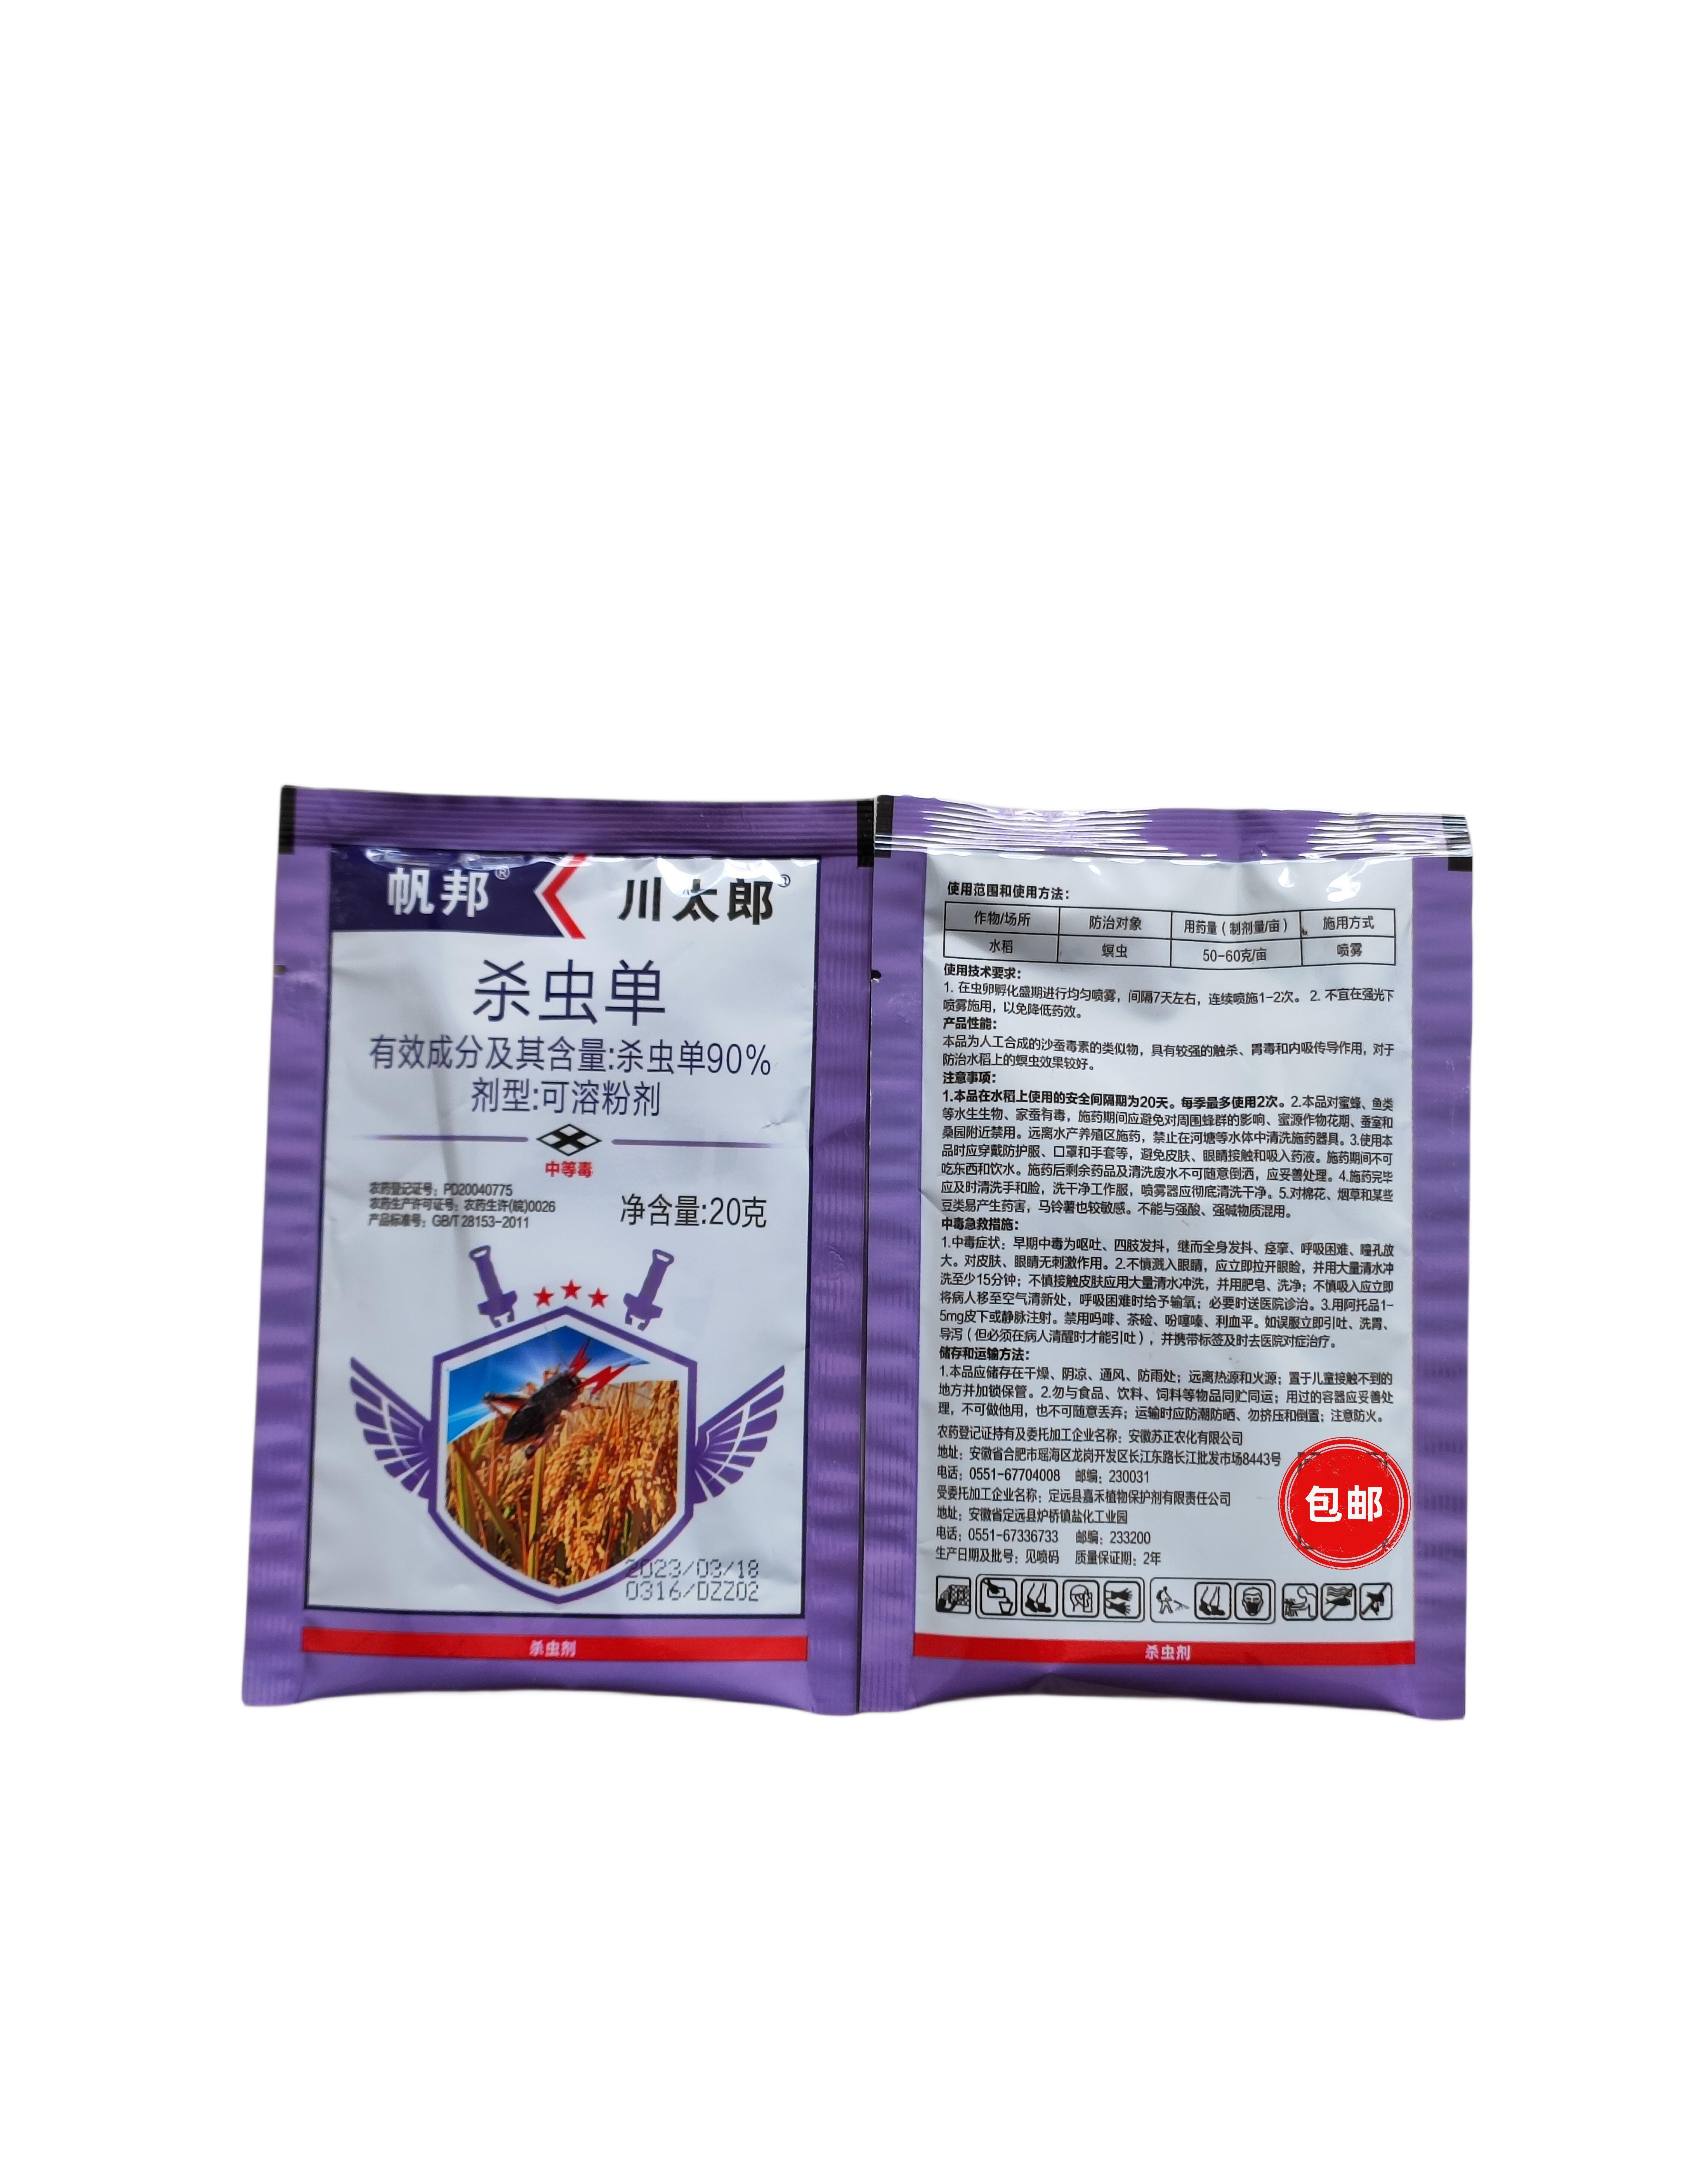 川太郎-90%杀虫单-可溶粉剂-作物水稻-防治螟虫